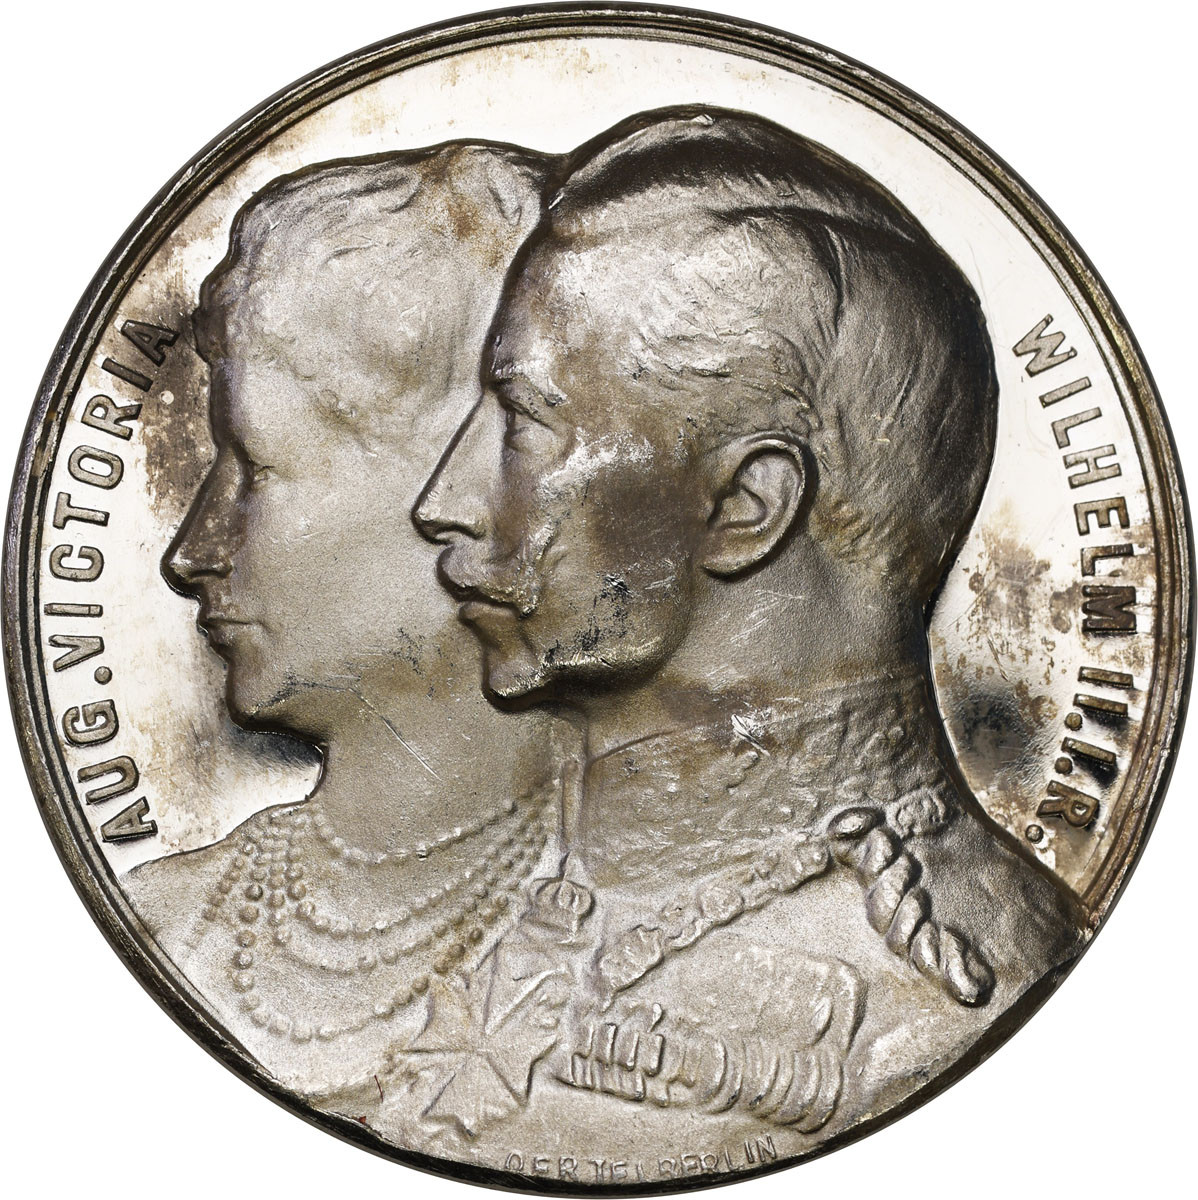 Niemcy, Prusy. Wilhelm II (1888-1918). Medal 1906, Oertel